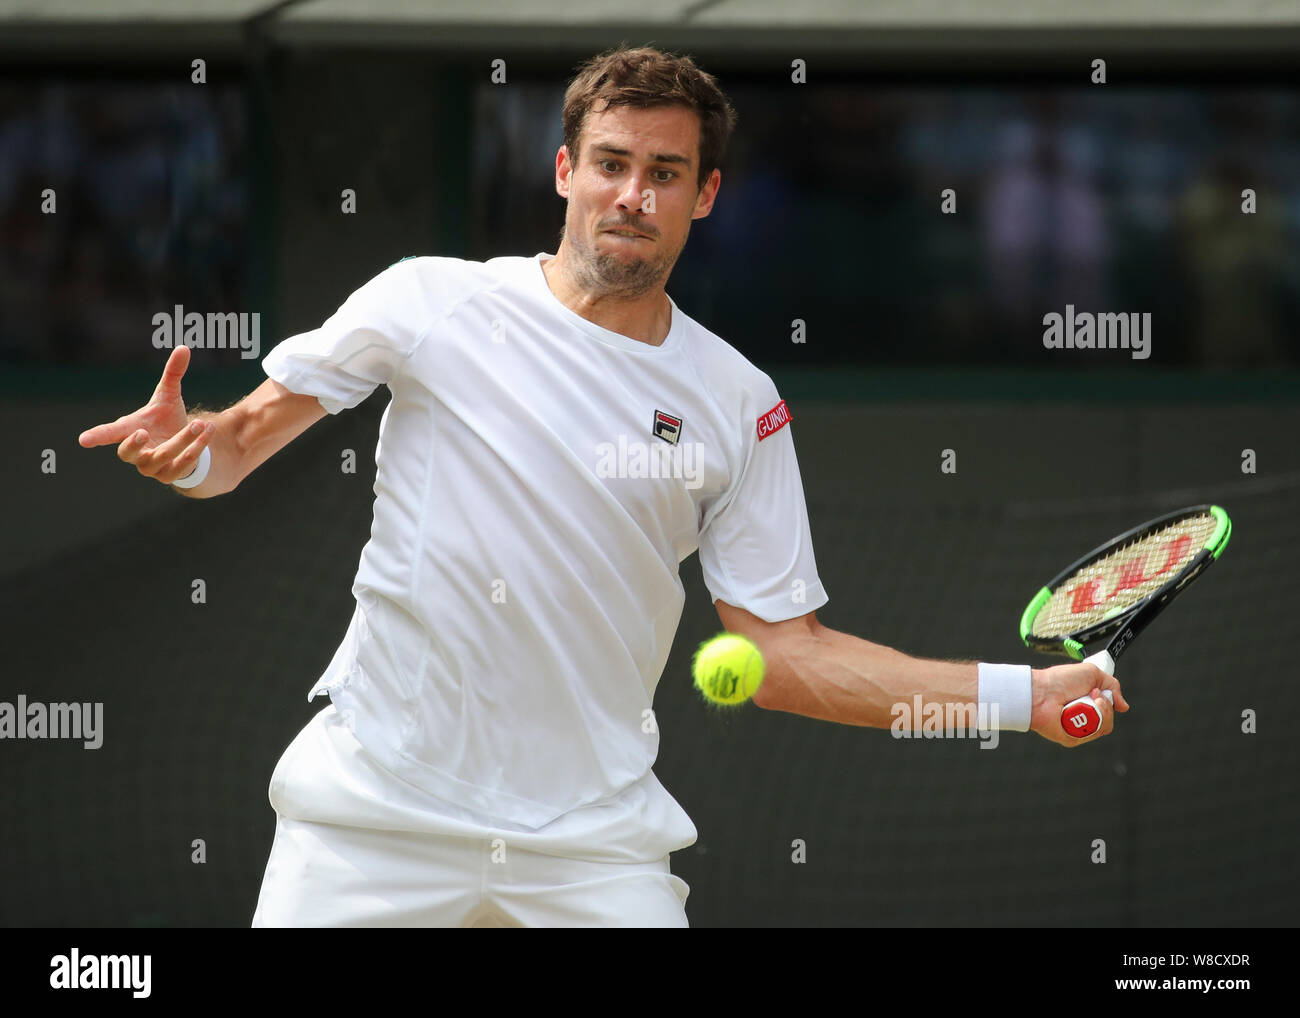 Le joueur de tennis argentin Guido Pella jouant forehand tourné au cours de  2019 de Wimbledon, Londres, Angleterre, Royaume-Uni Photo Stock - Alamy